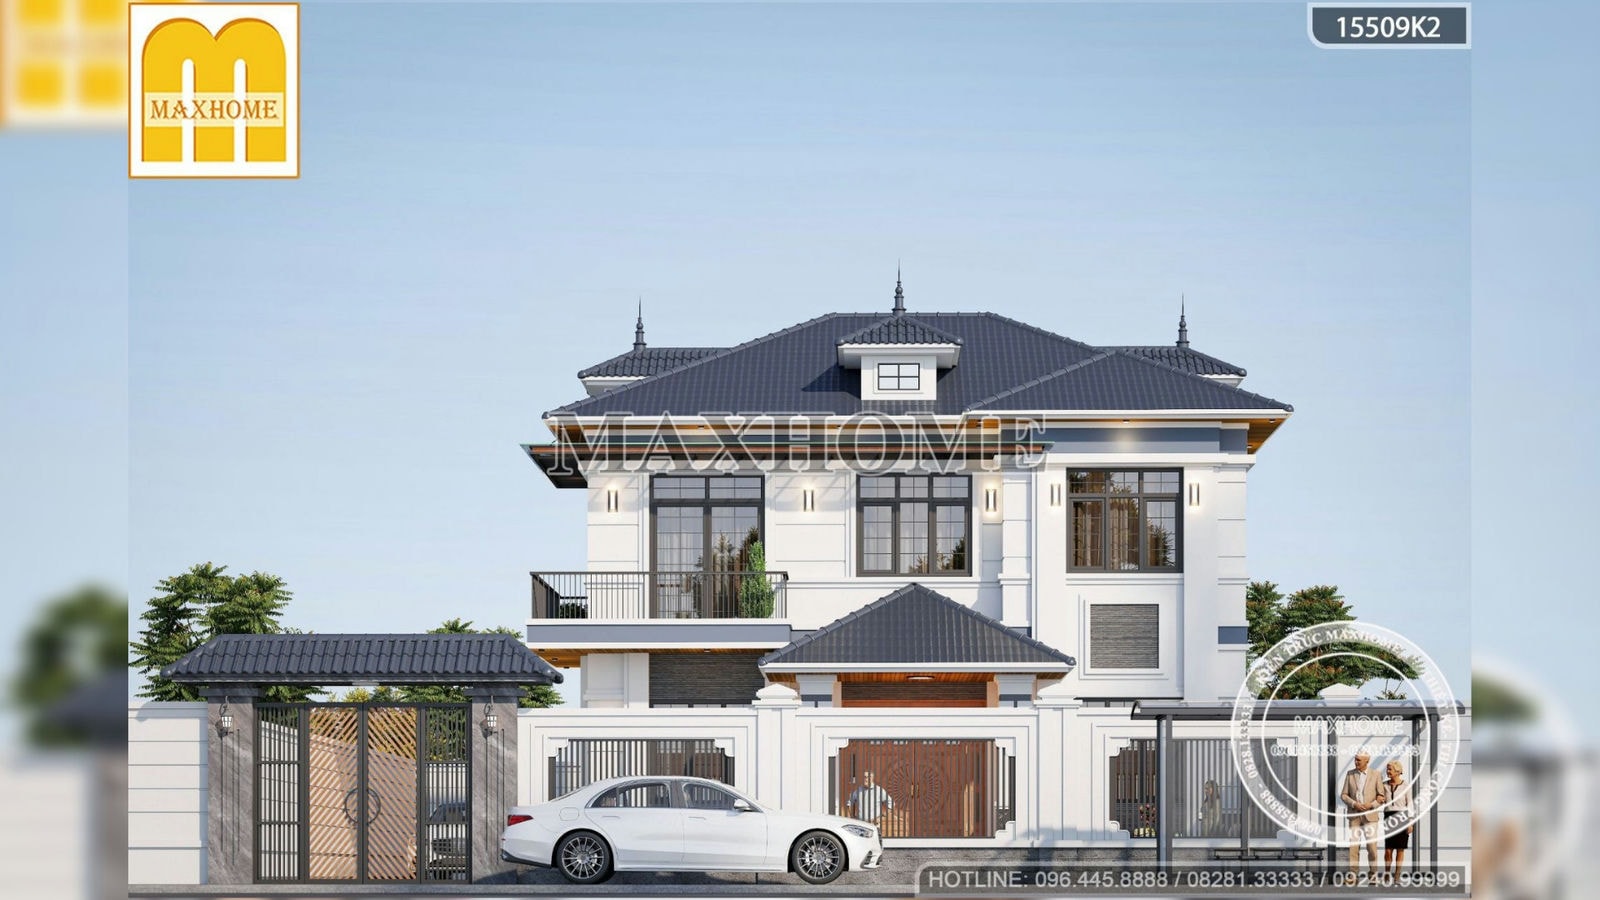 Siêu phẩm biệt thự 2 tầng mái Nhật với thiết kế ấn tượng tại Thái Bình | MH02400